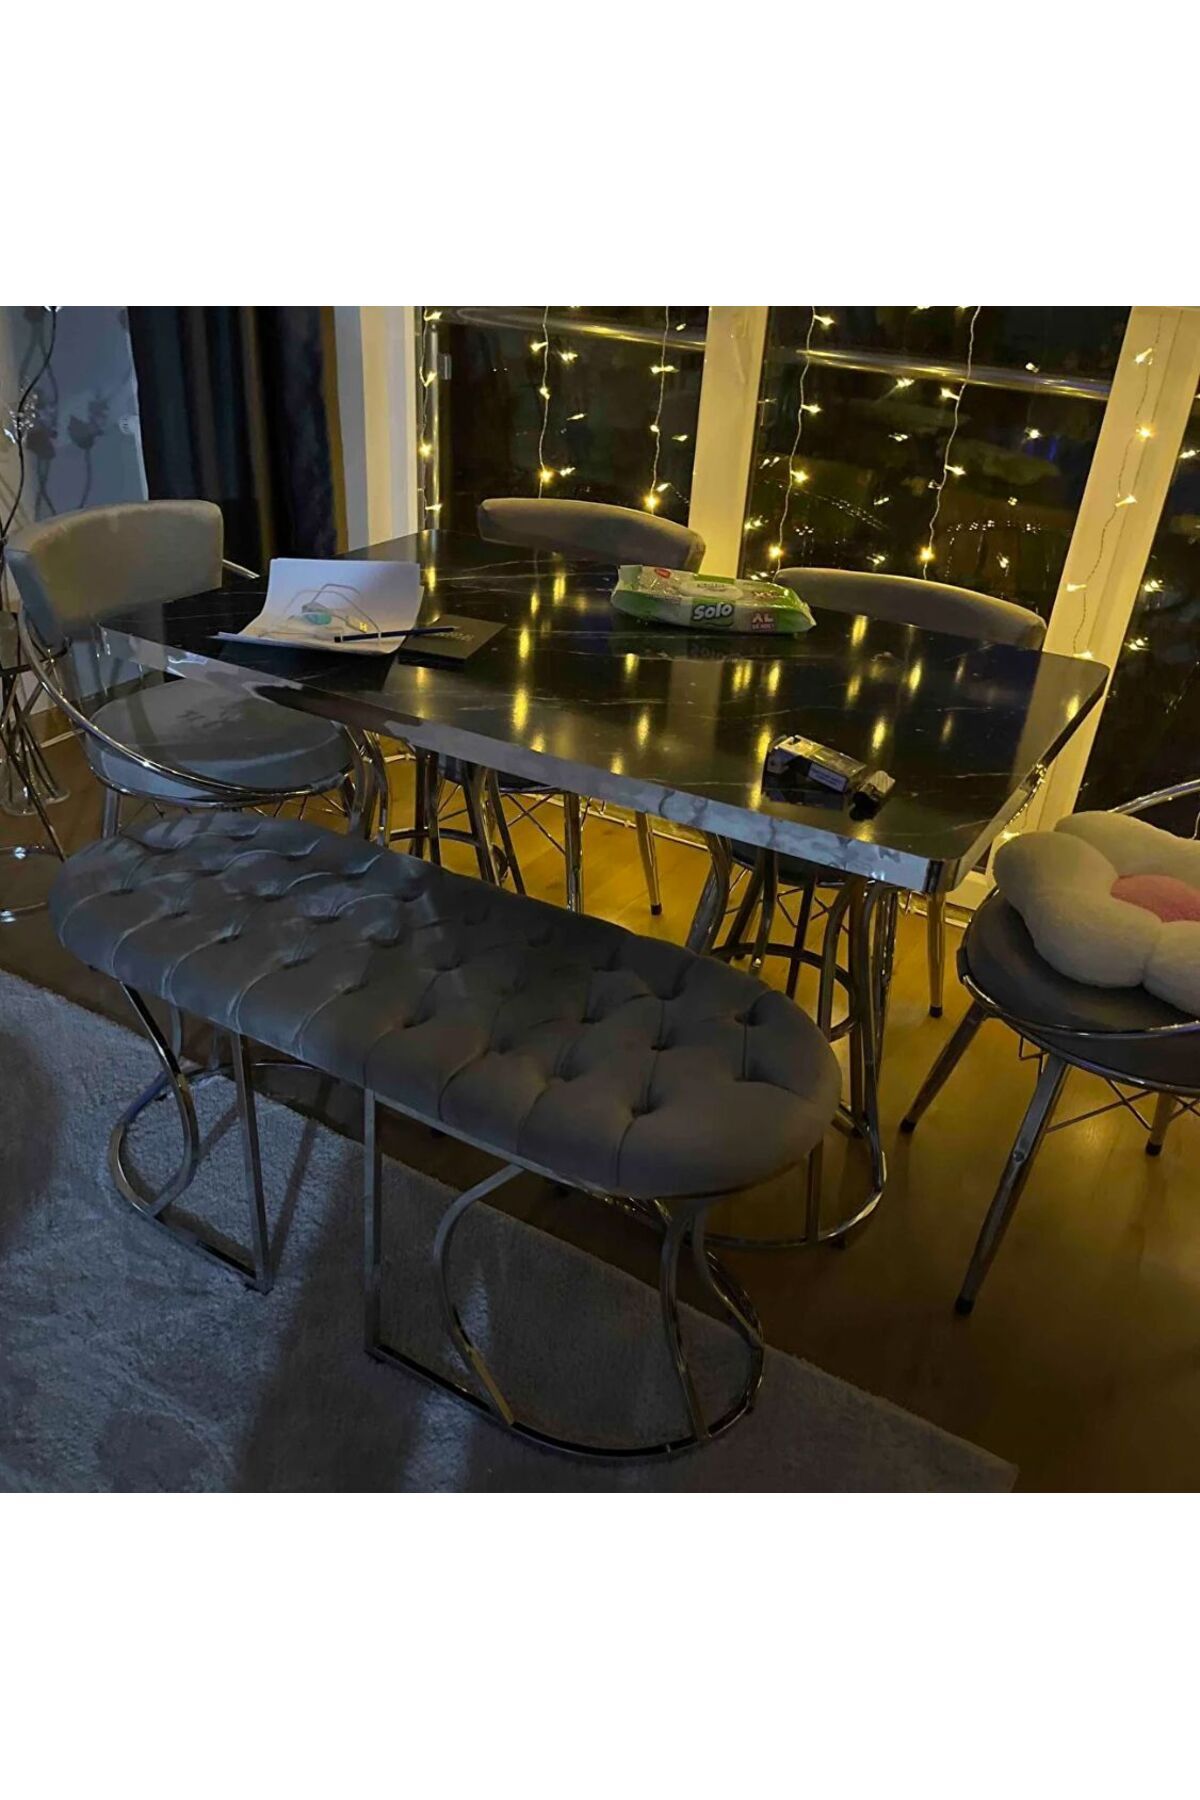 BY ORHAN GÜZEL Mutfak Masası Takımı, Salon Masa Takımı 6 Kişilik New Uzay Gümüş Benchli Salon Masa Takımı